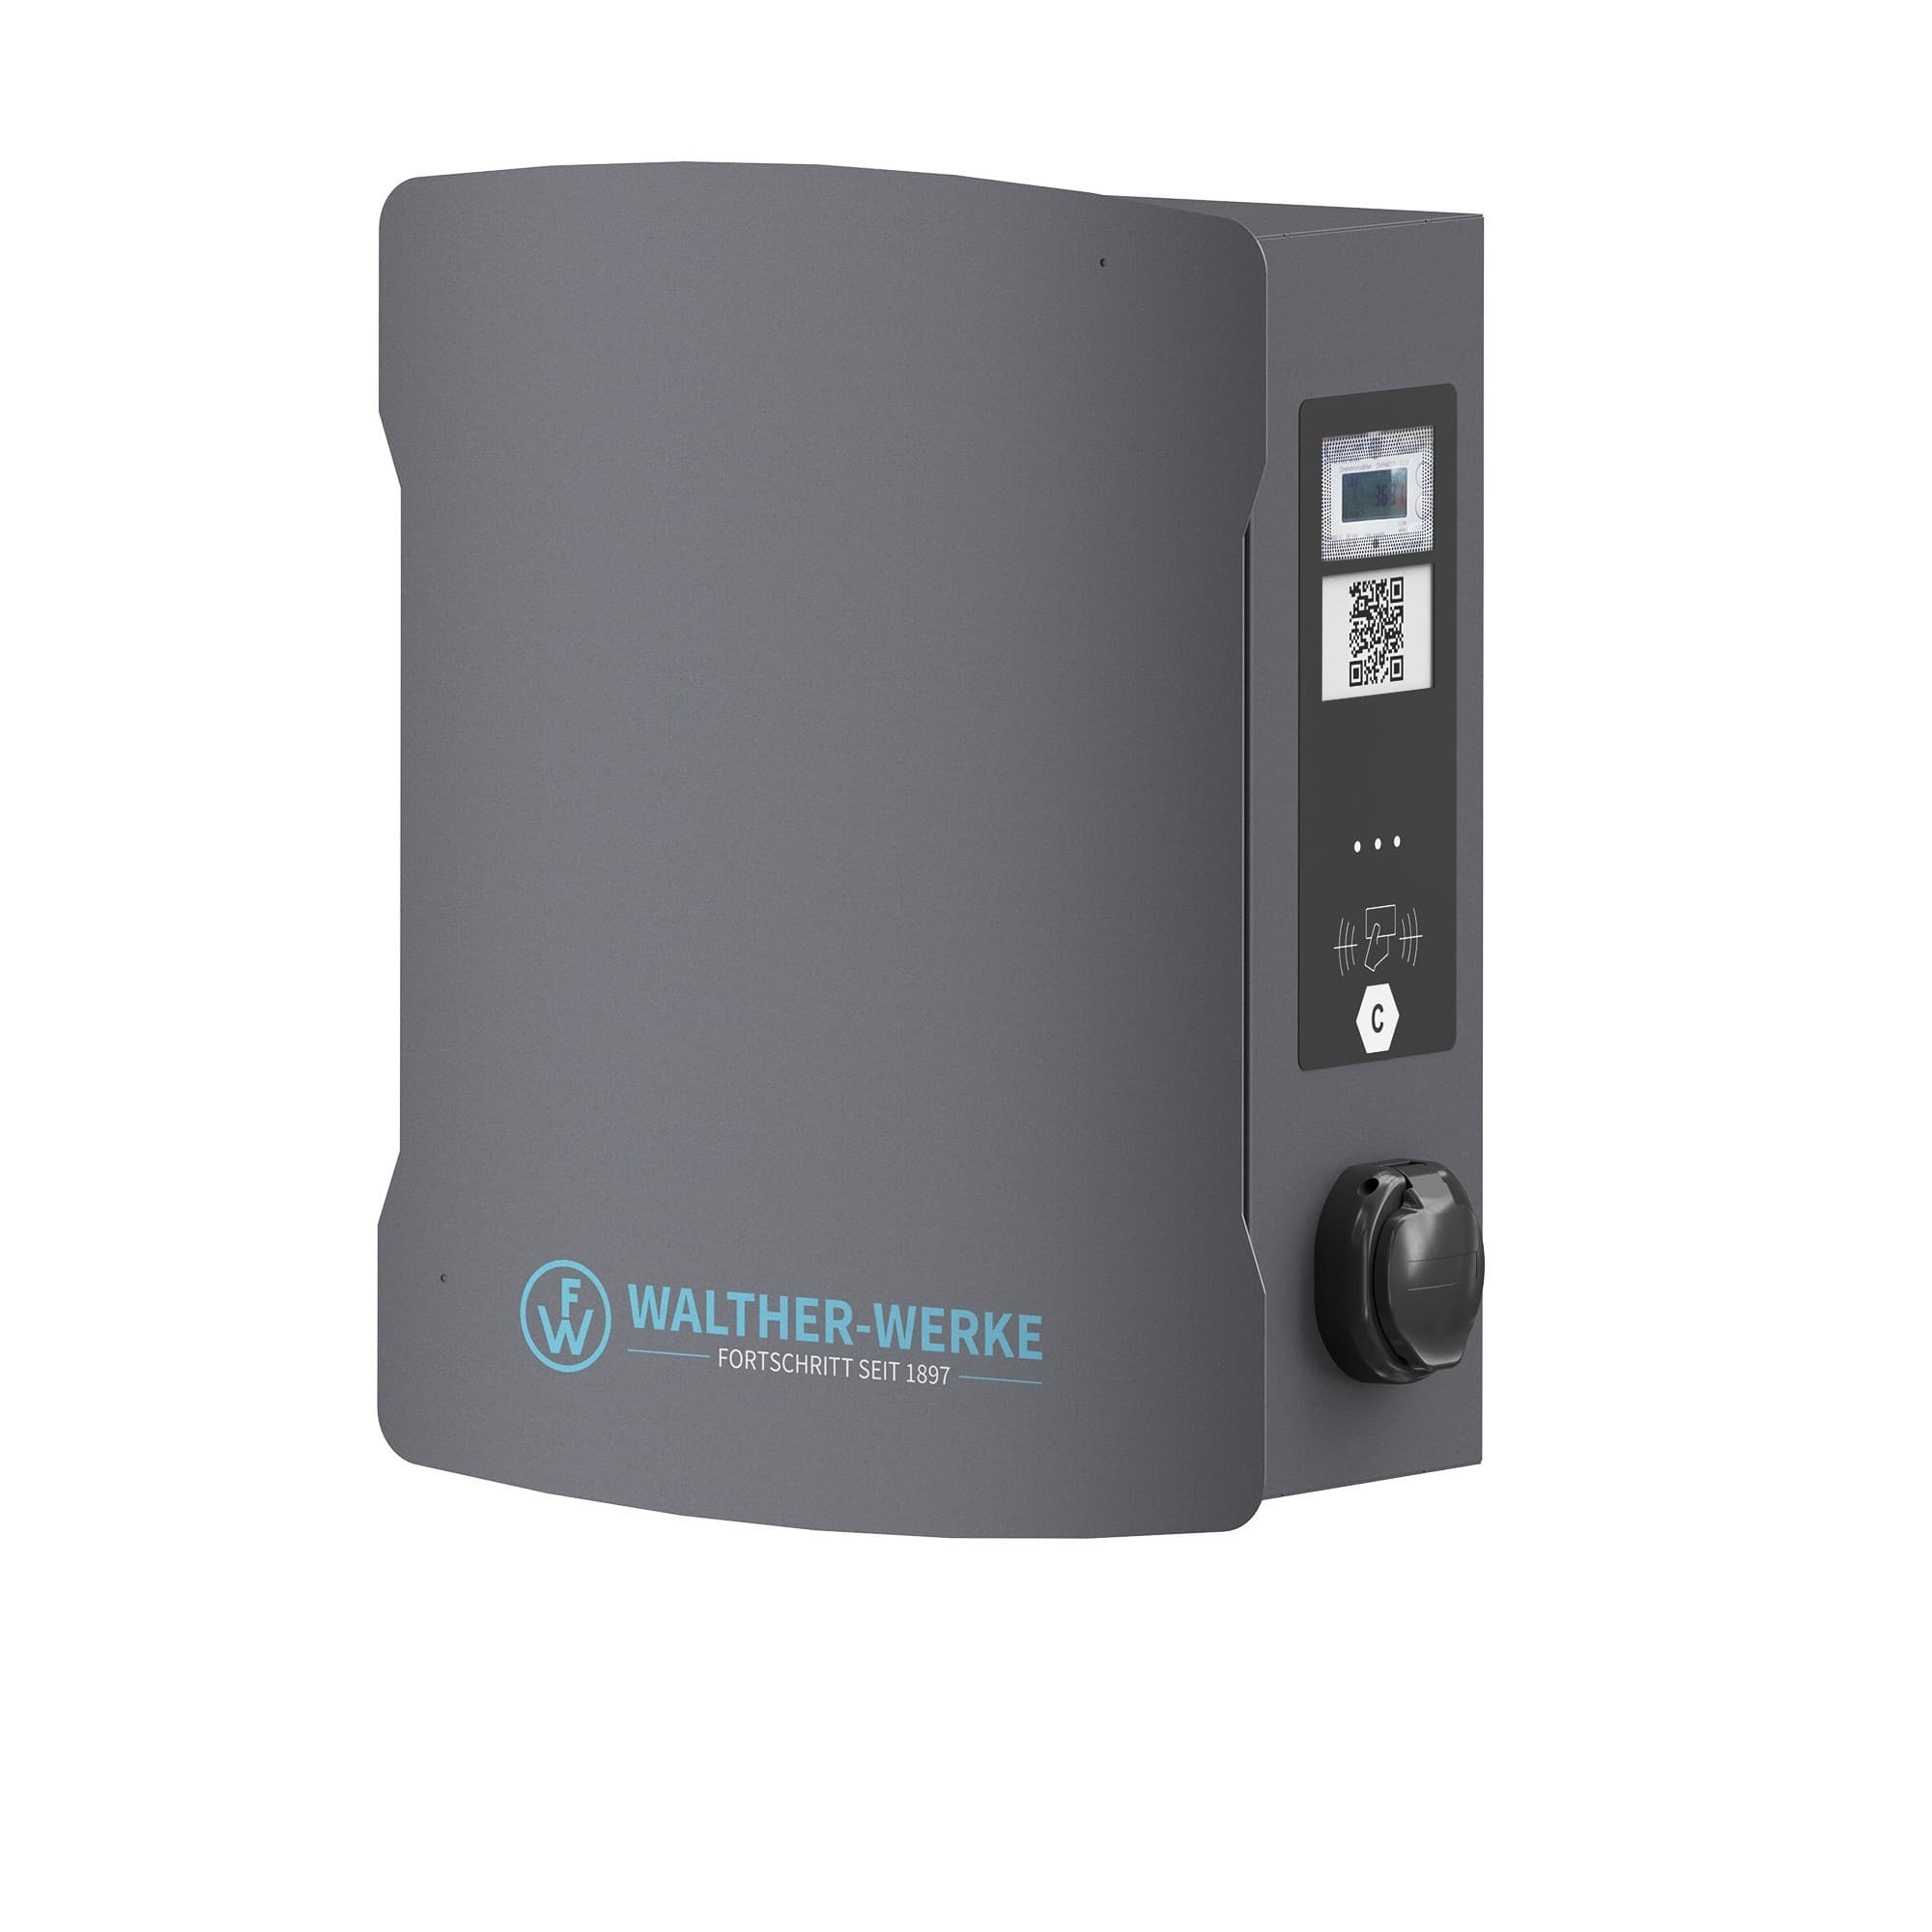 Walther Werke 98603210E Wallbox smartEVO duo+ mit 2 Ladedosen max. 22kW, eichrechtskonform,PLC ISO 15118 und EEBUS